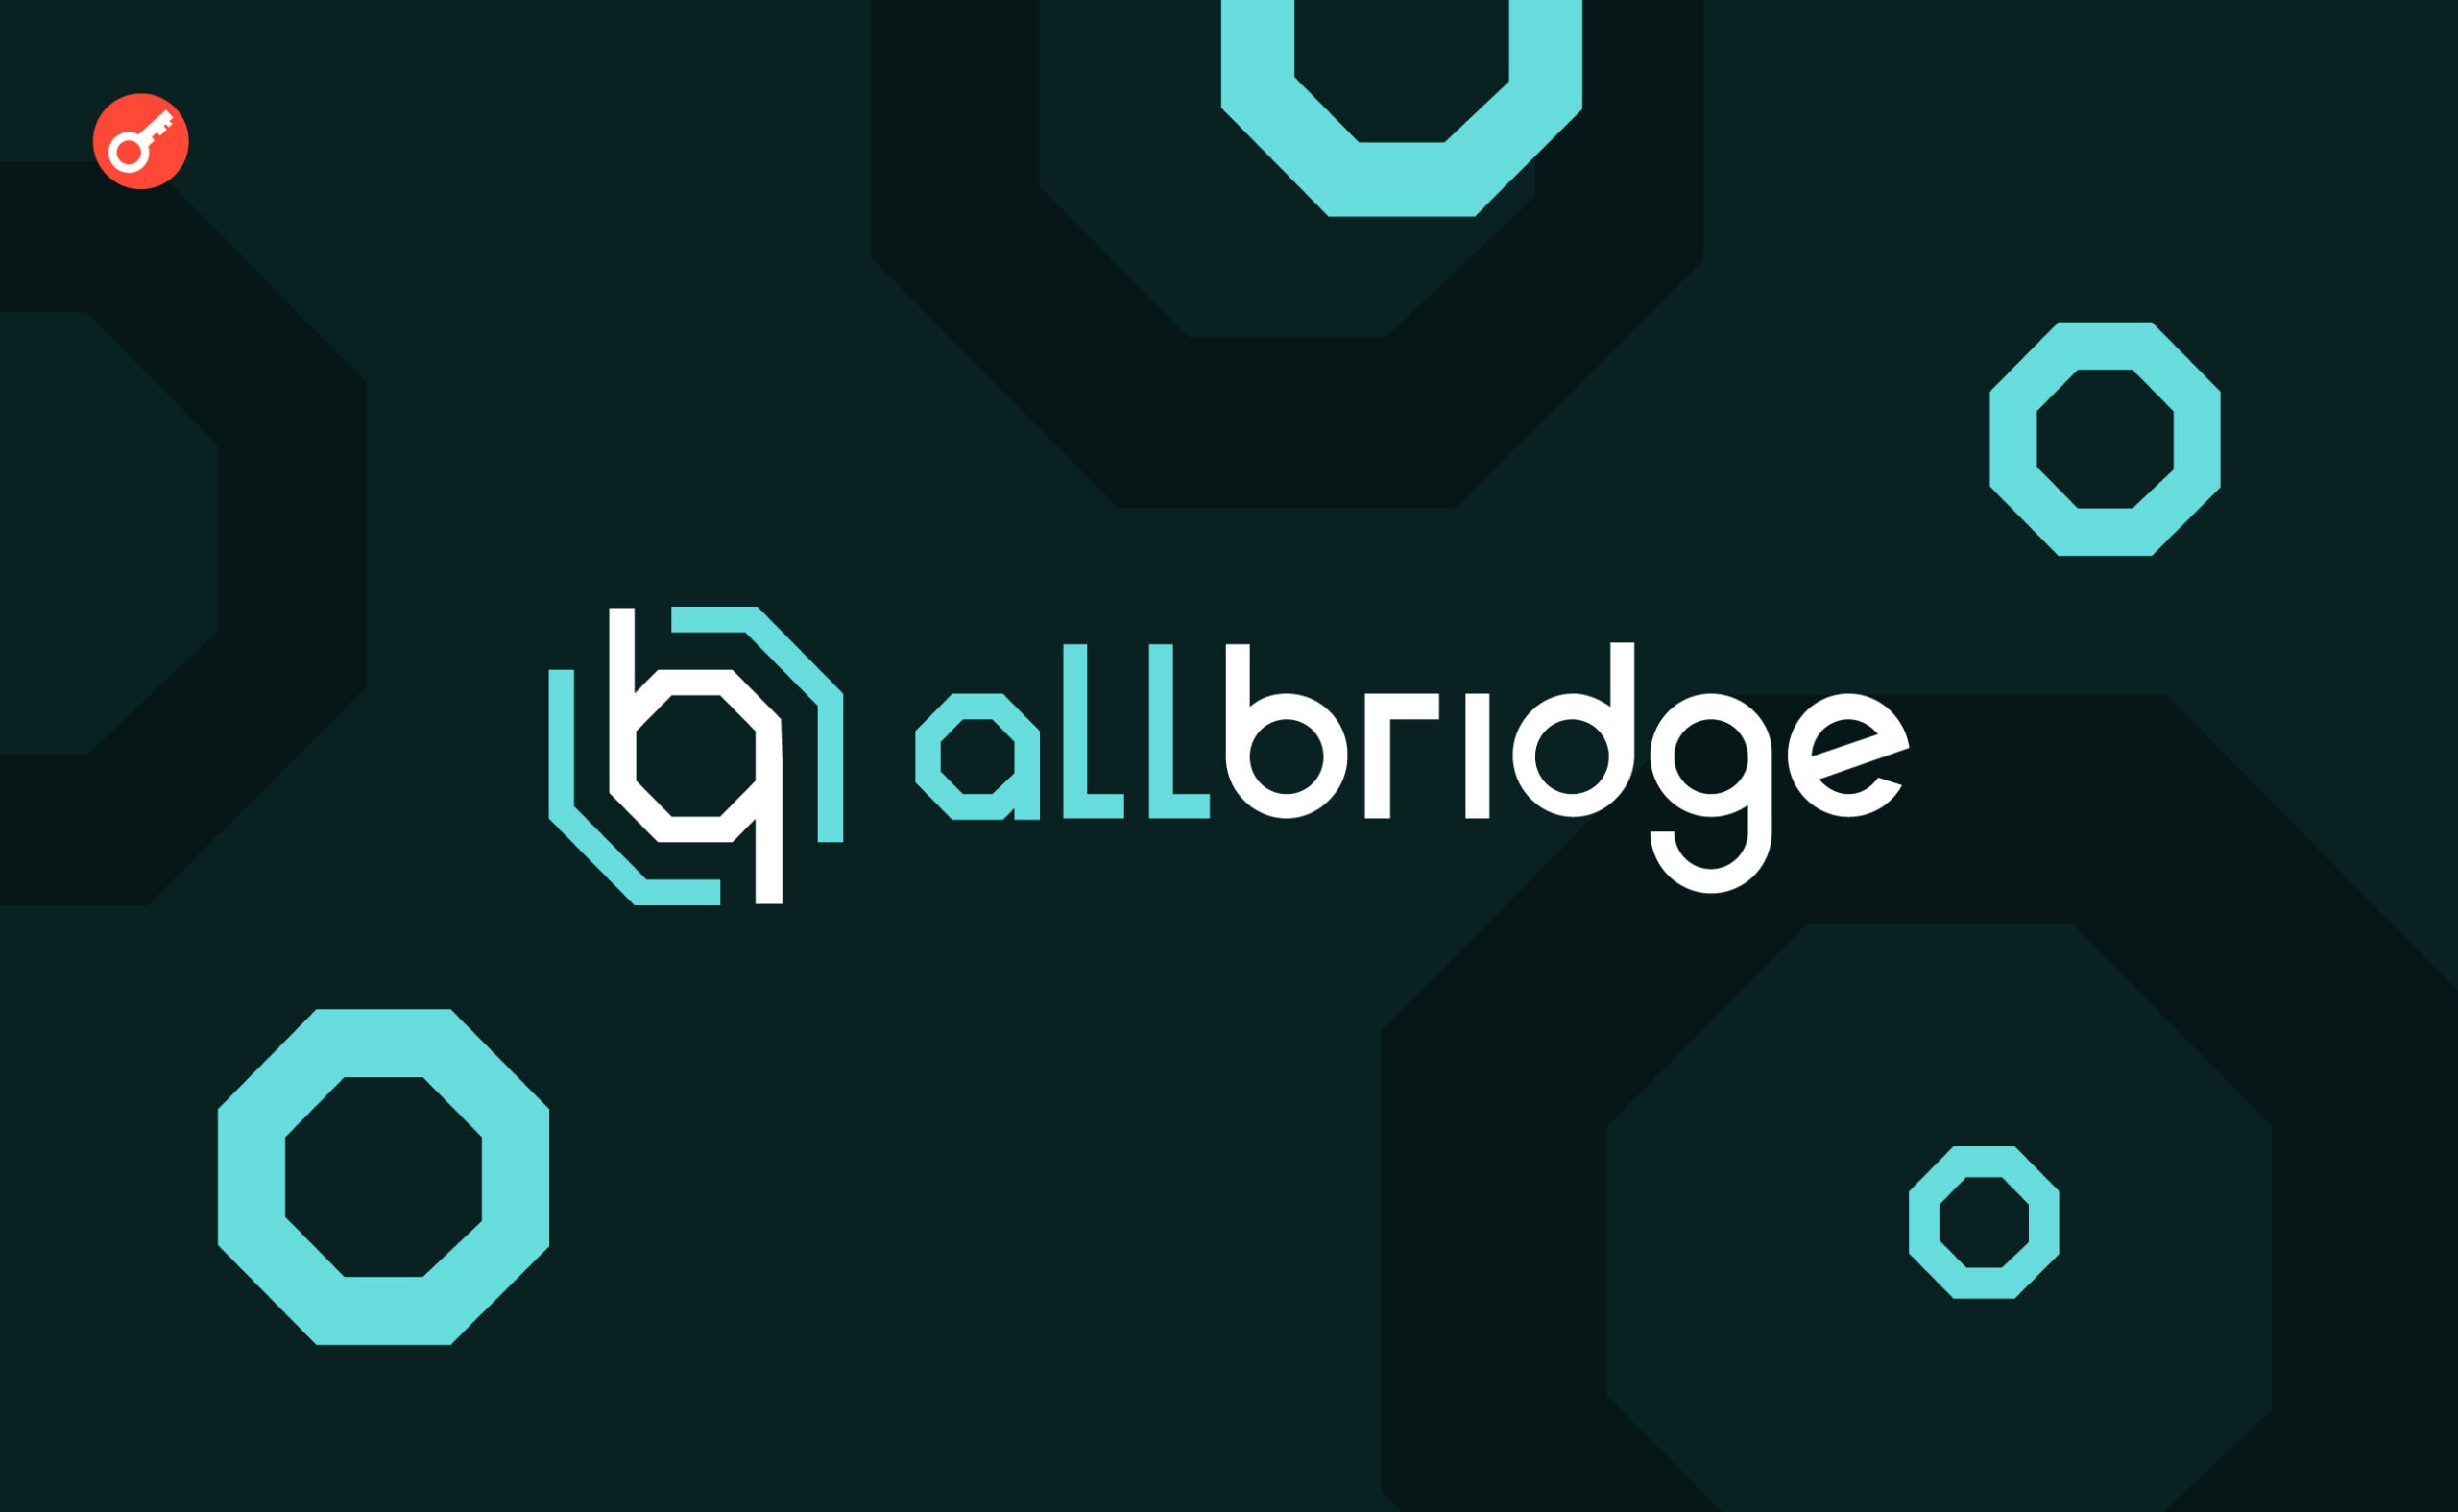 Allbridge запропонували хакеру компроміс. Головний колаж новини.